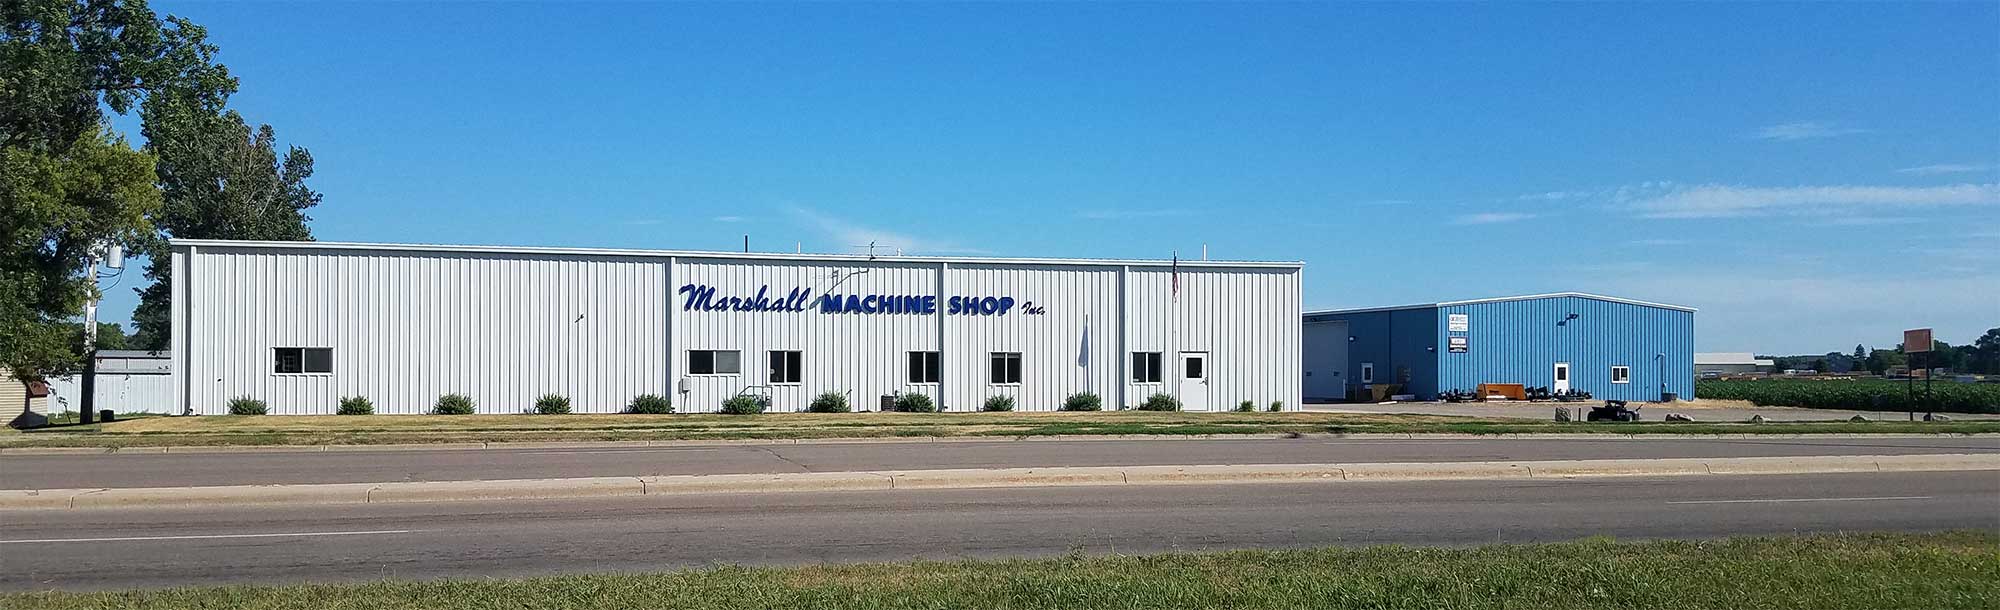 Marshall Machine Shop